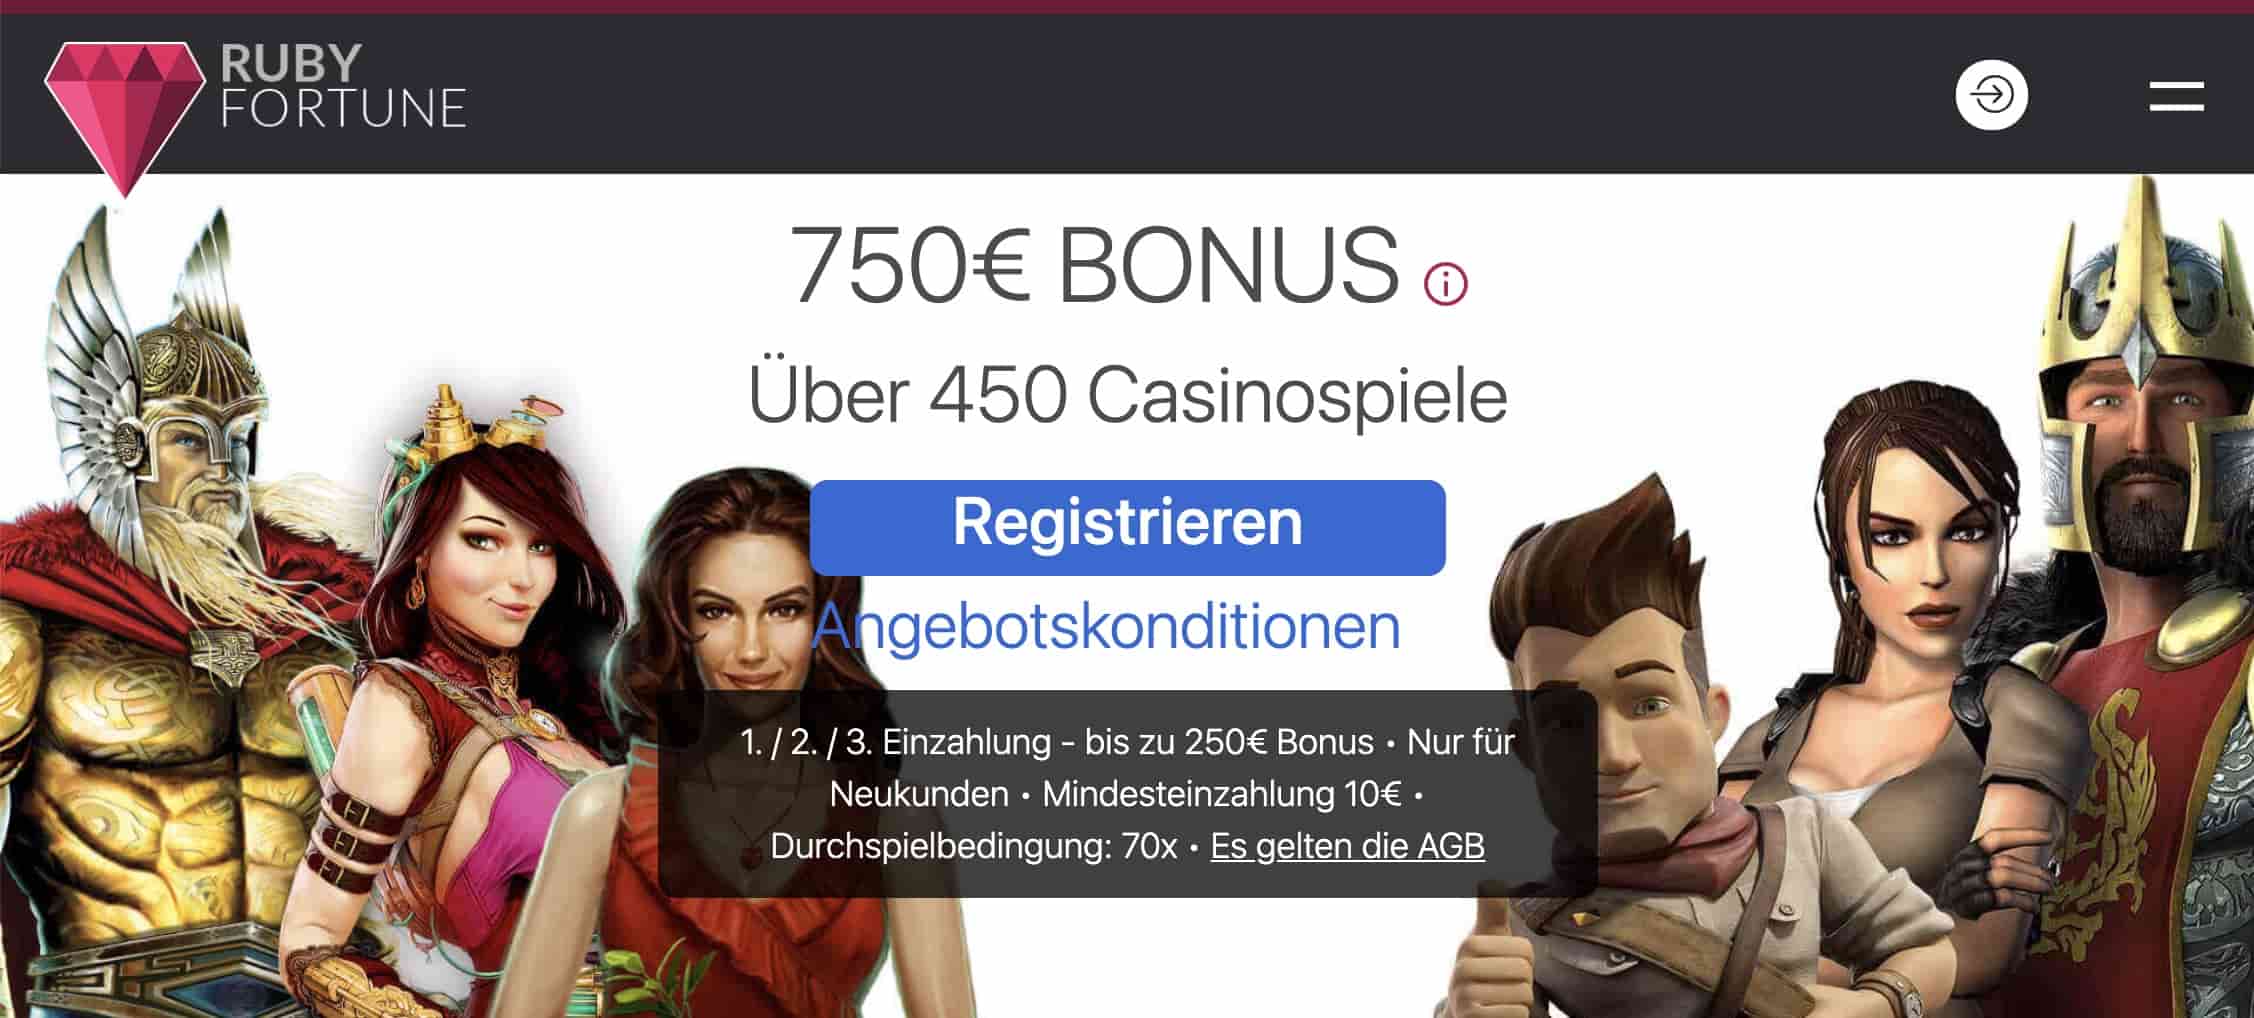 Casino Homepage 2021